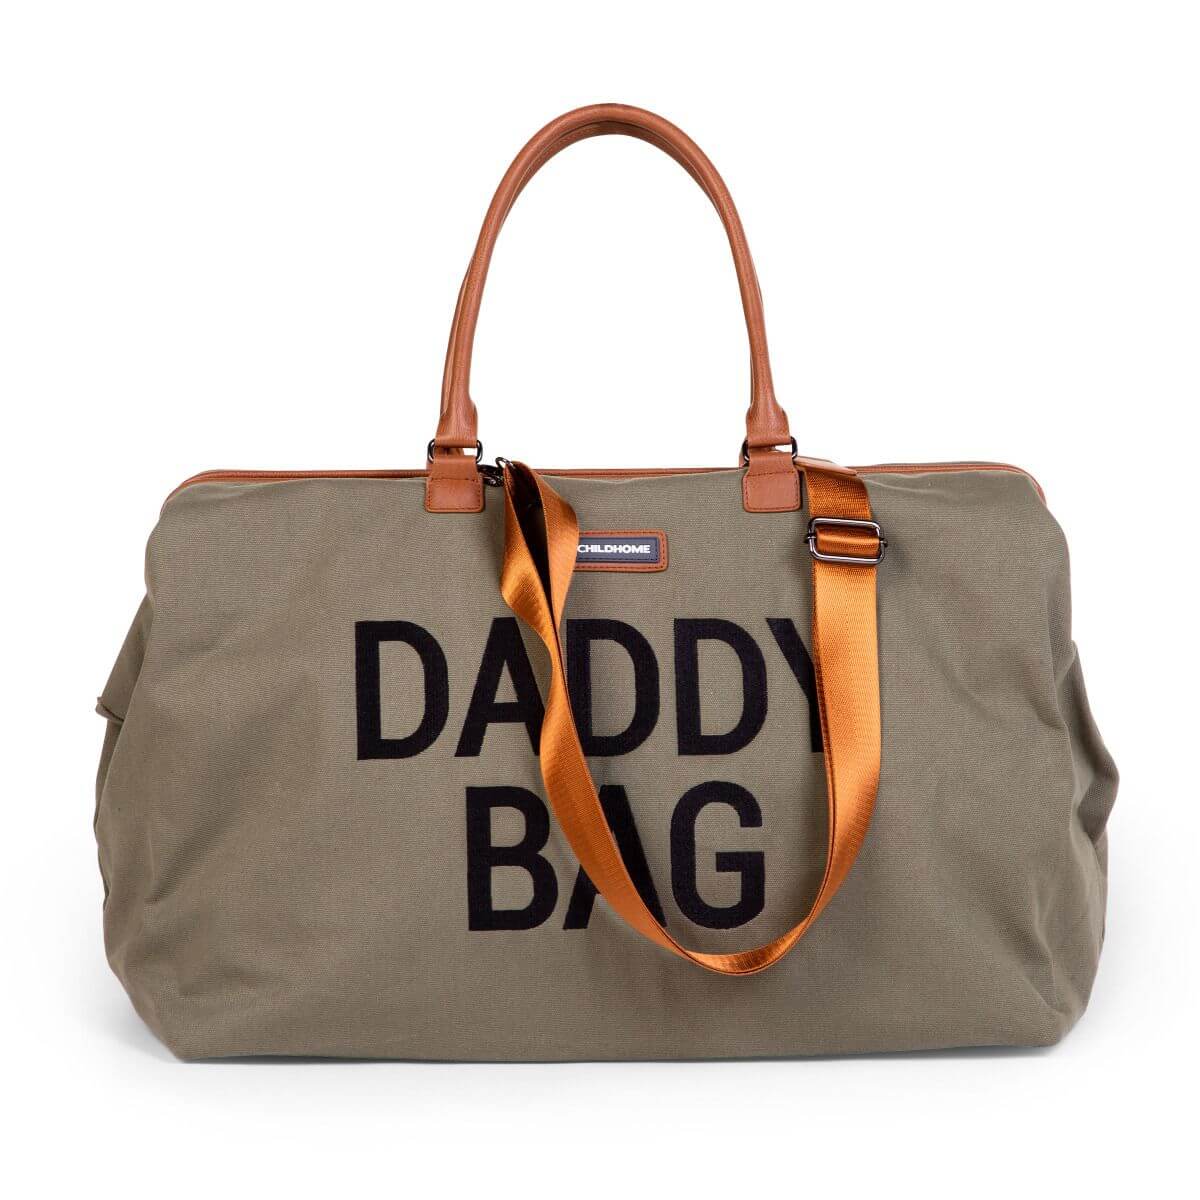 Childhome Daddy Bag & Wickeltasche - Canvas - khaki